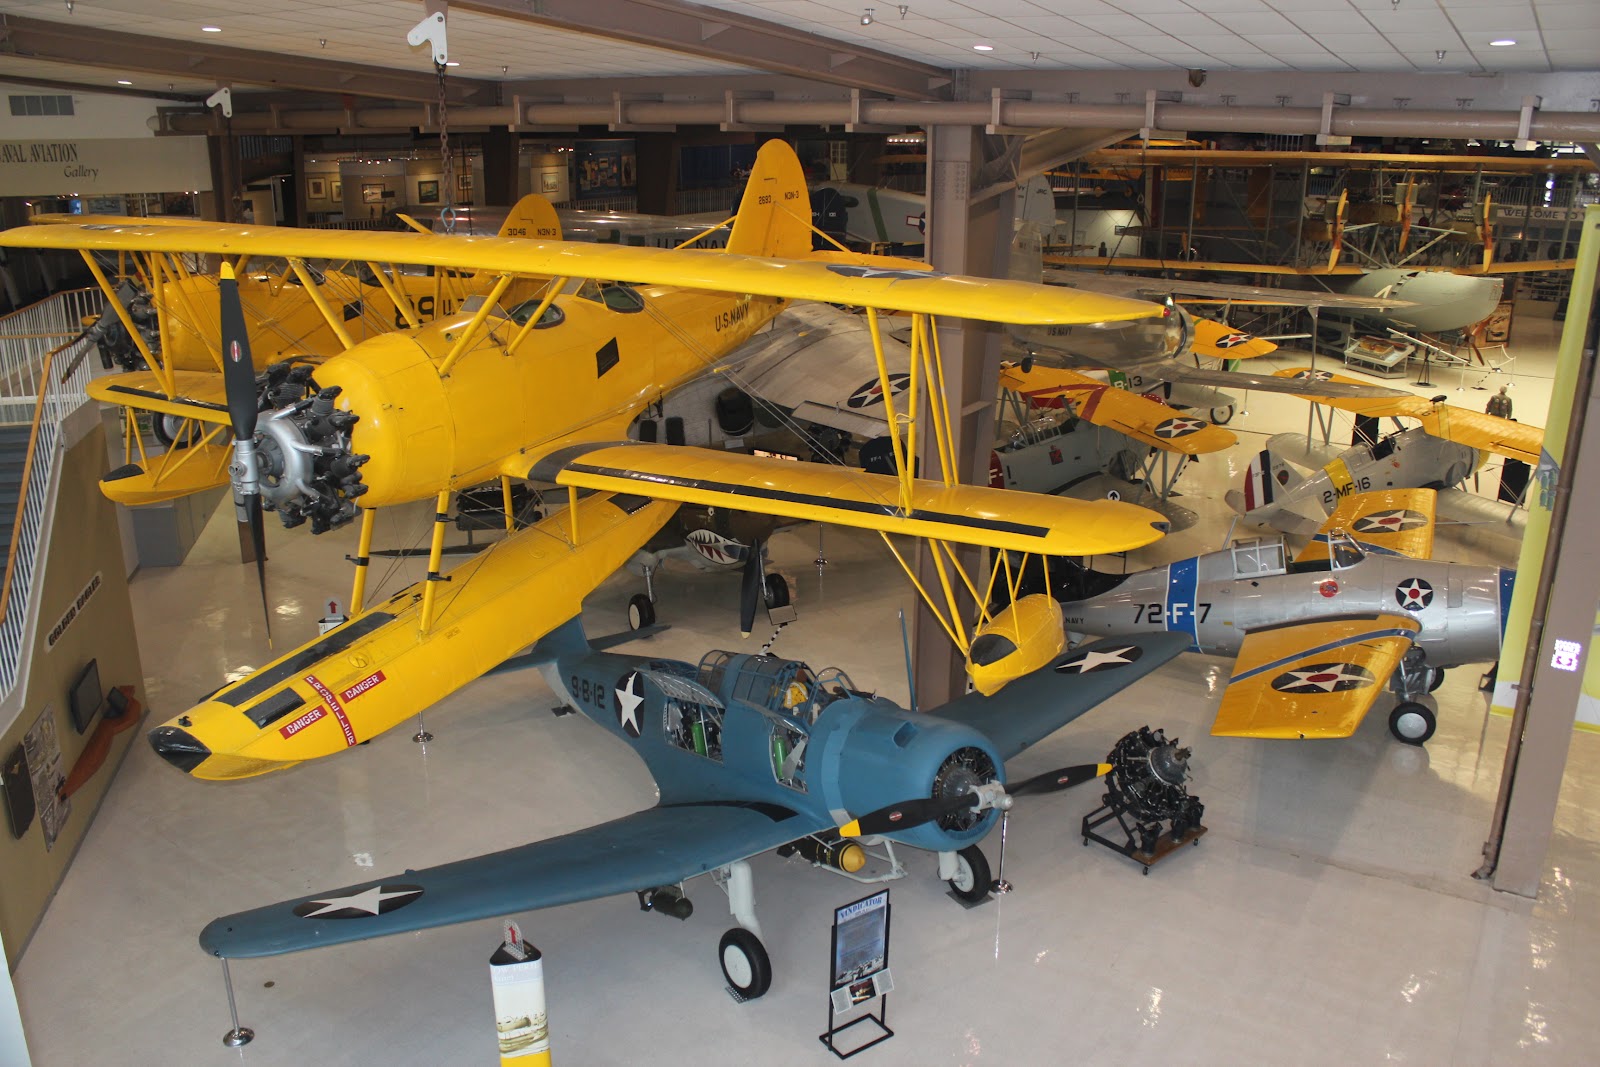 Naval+Air+Museum+in+Pensacola,+FL.JPG